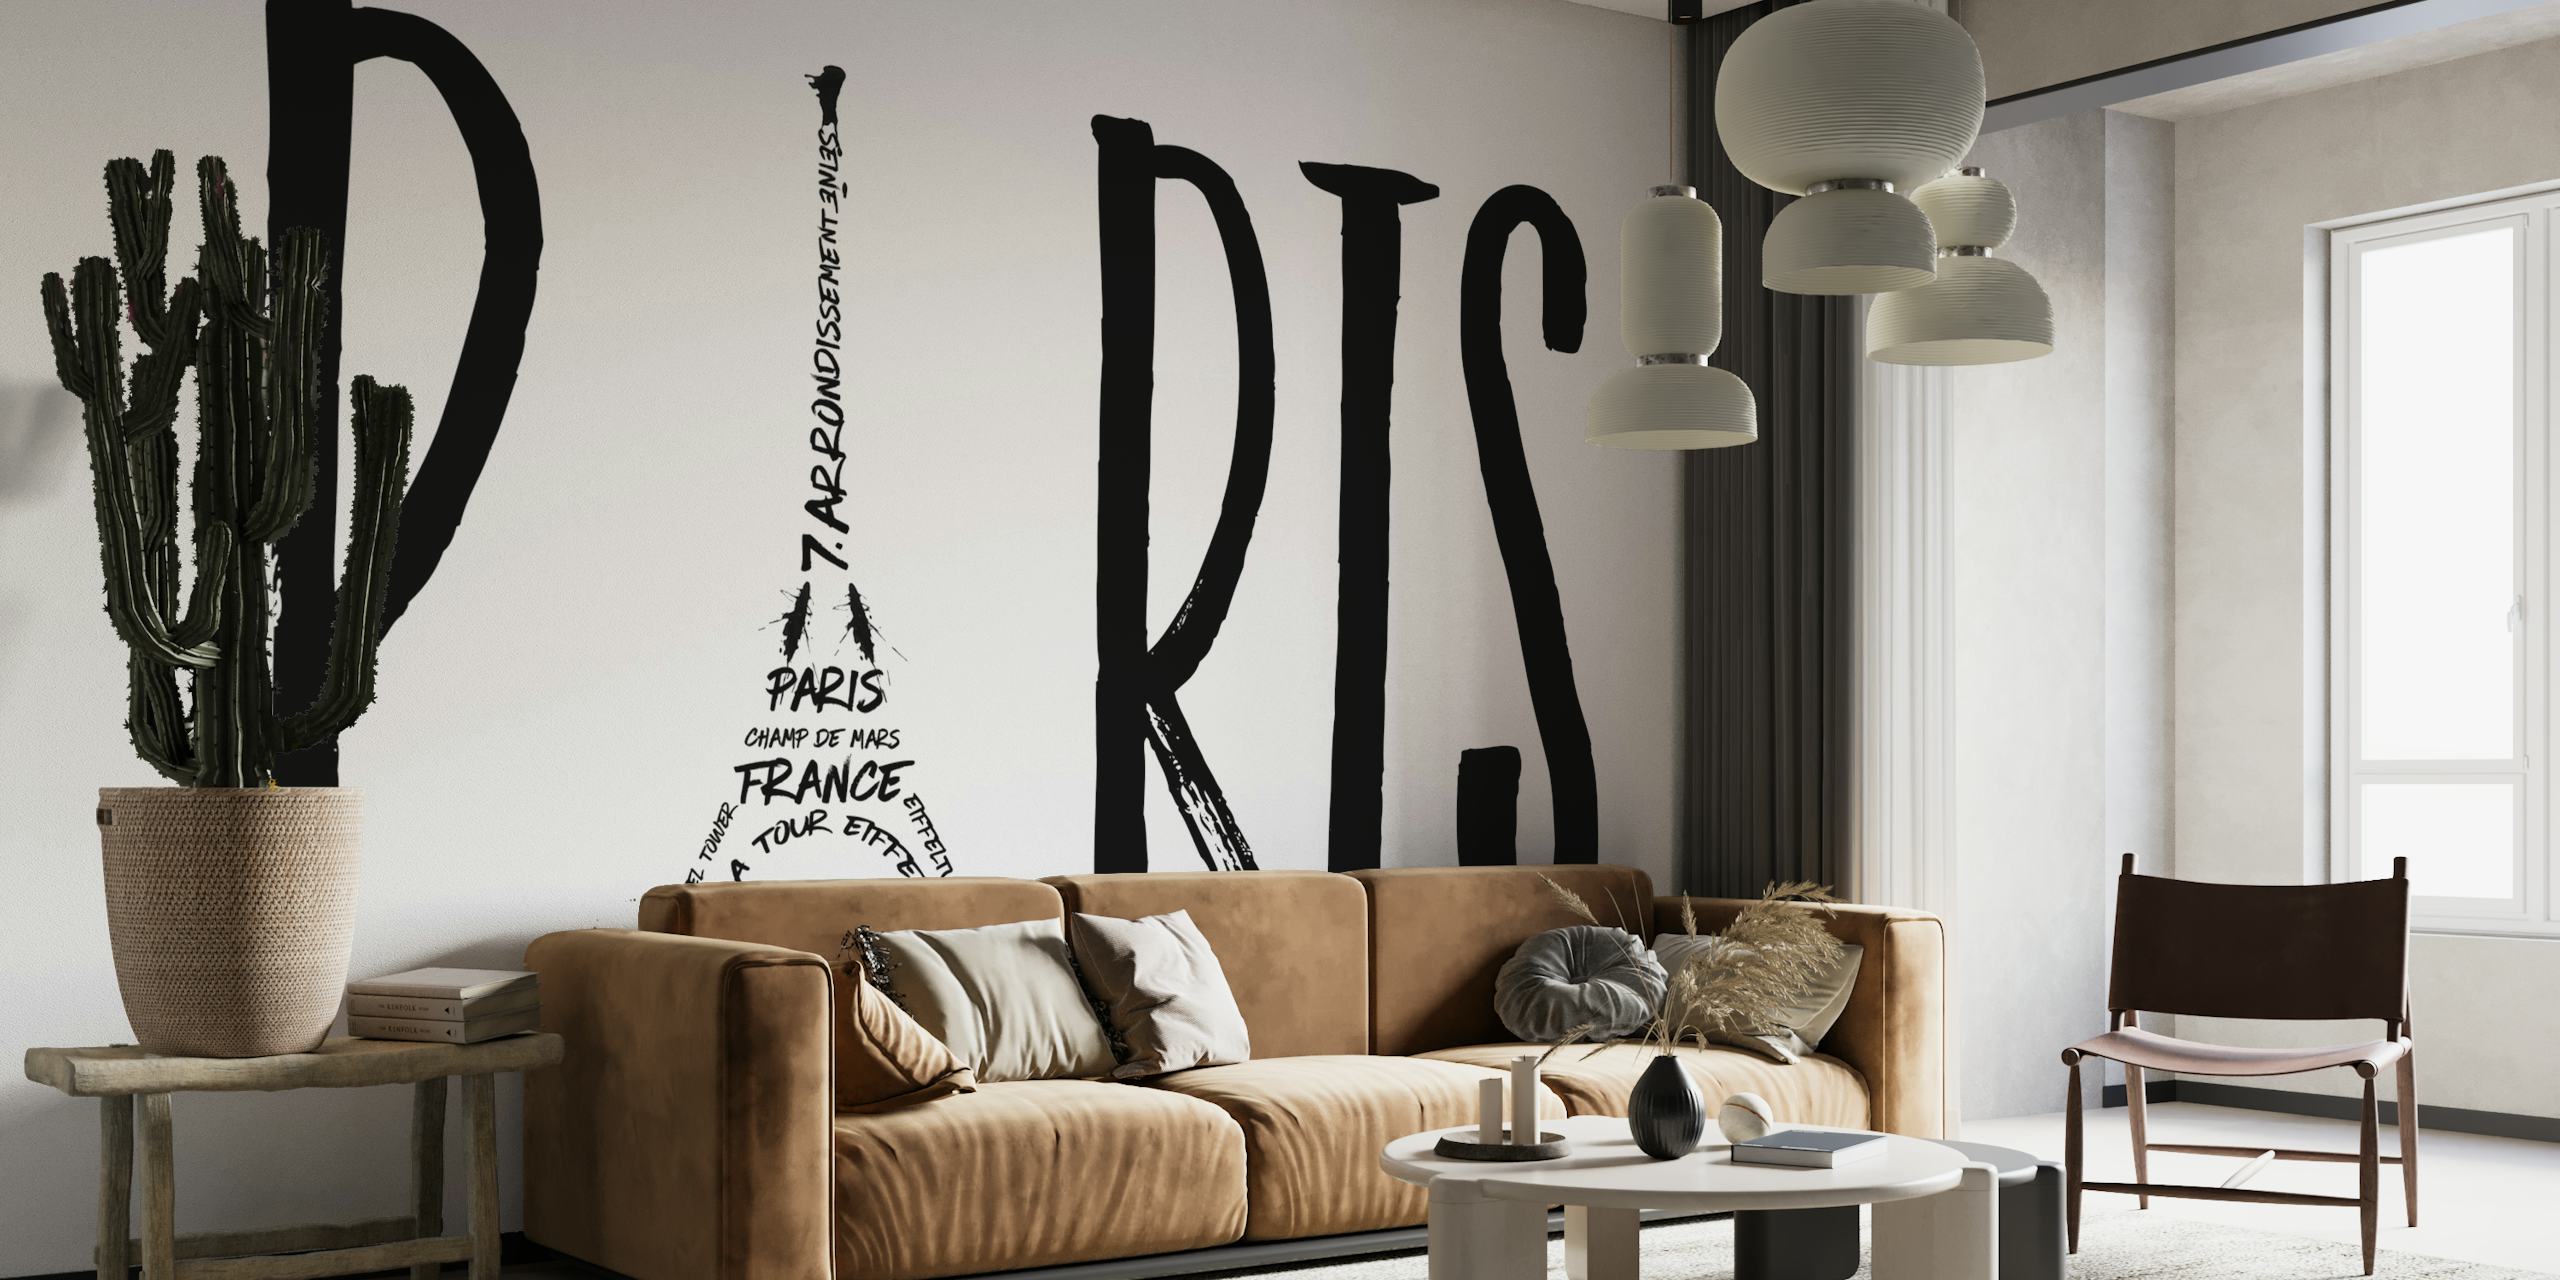 Crno-bijela pariška tipografija s Eiffelovim tornjem integriranim u dizajn